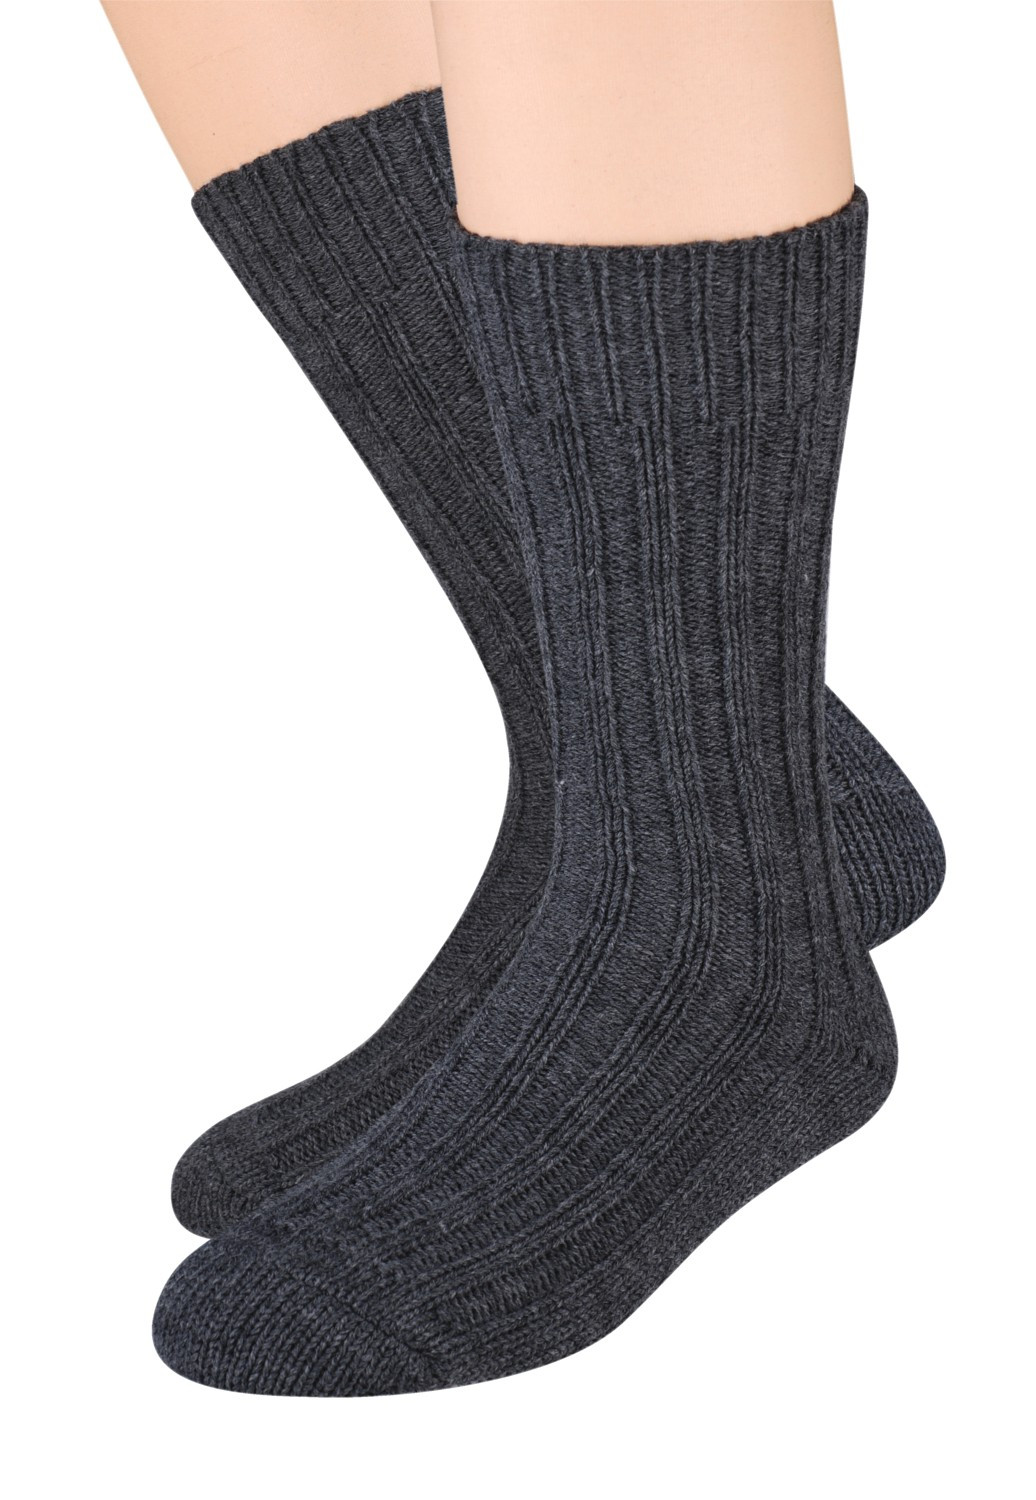 Pánské vlněné ponožky Steven art.085 41-46 olivový 41-43